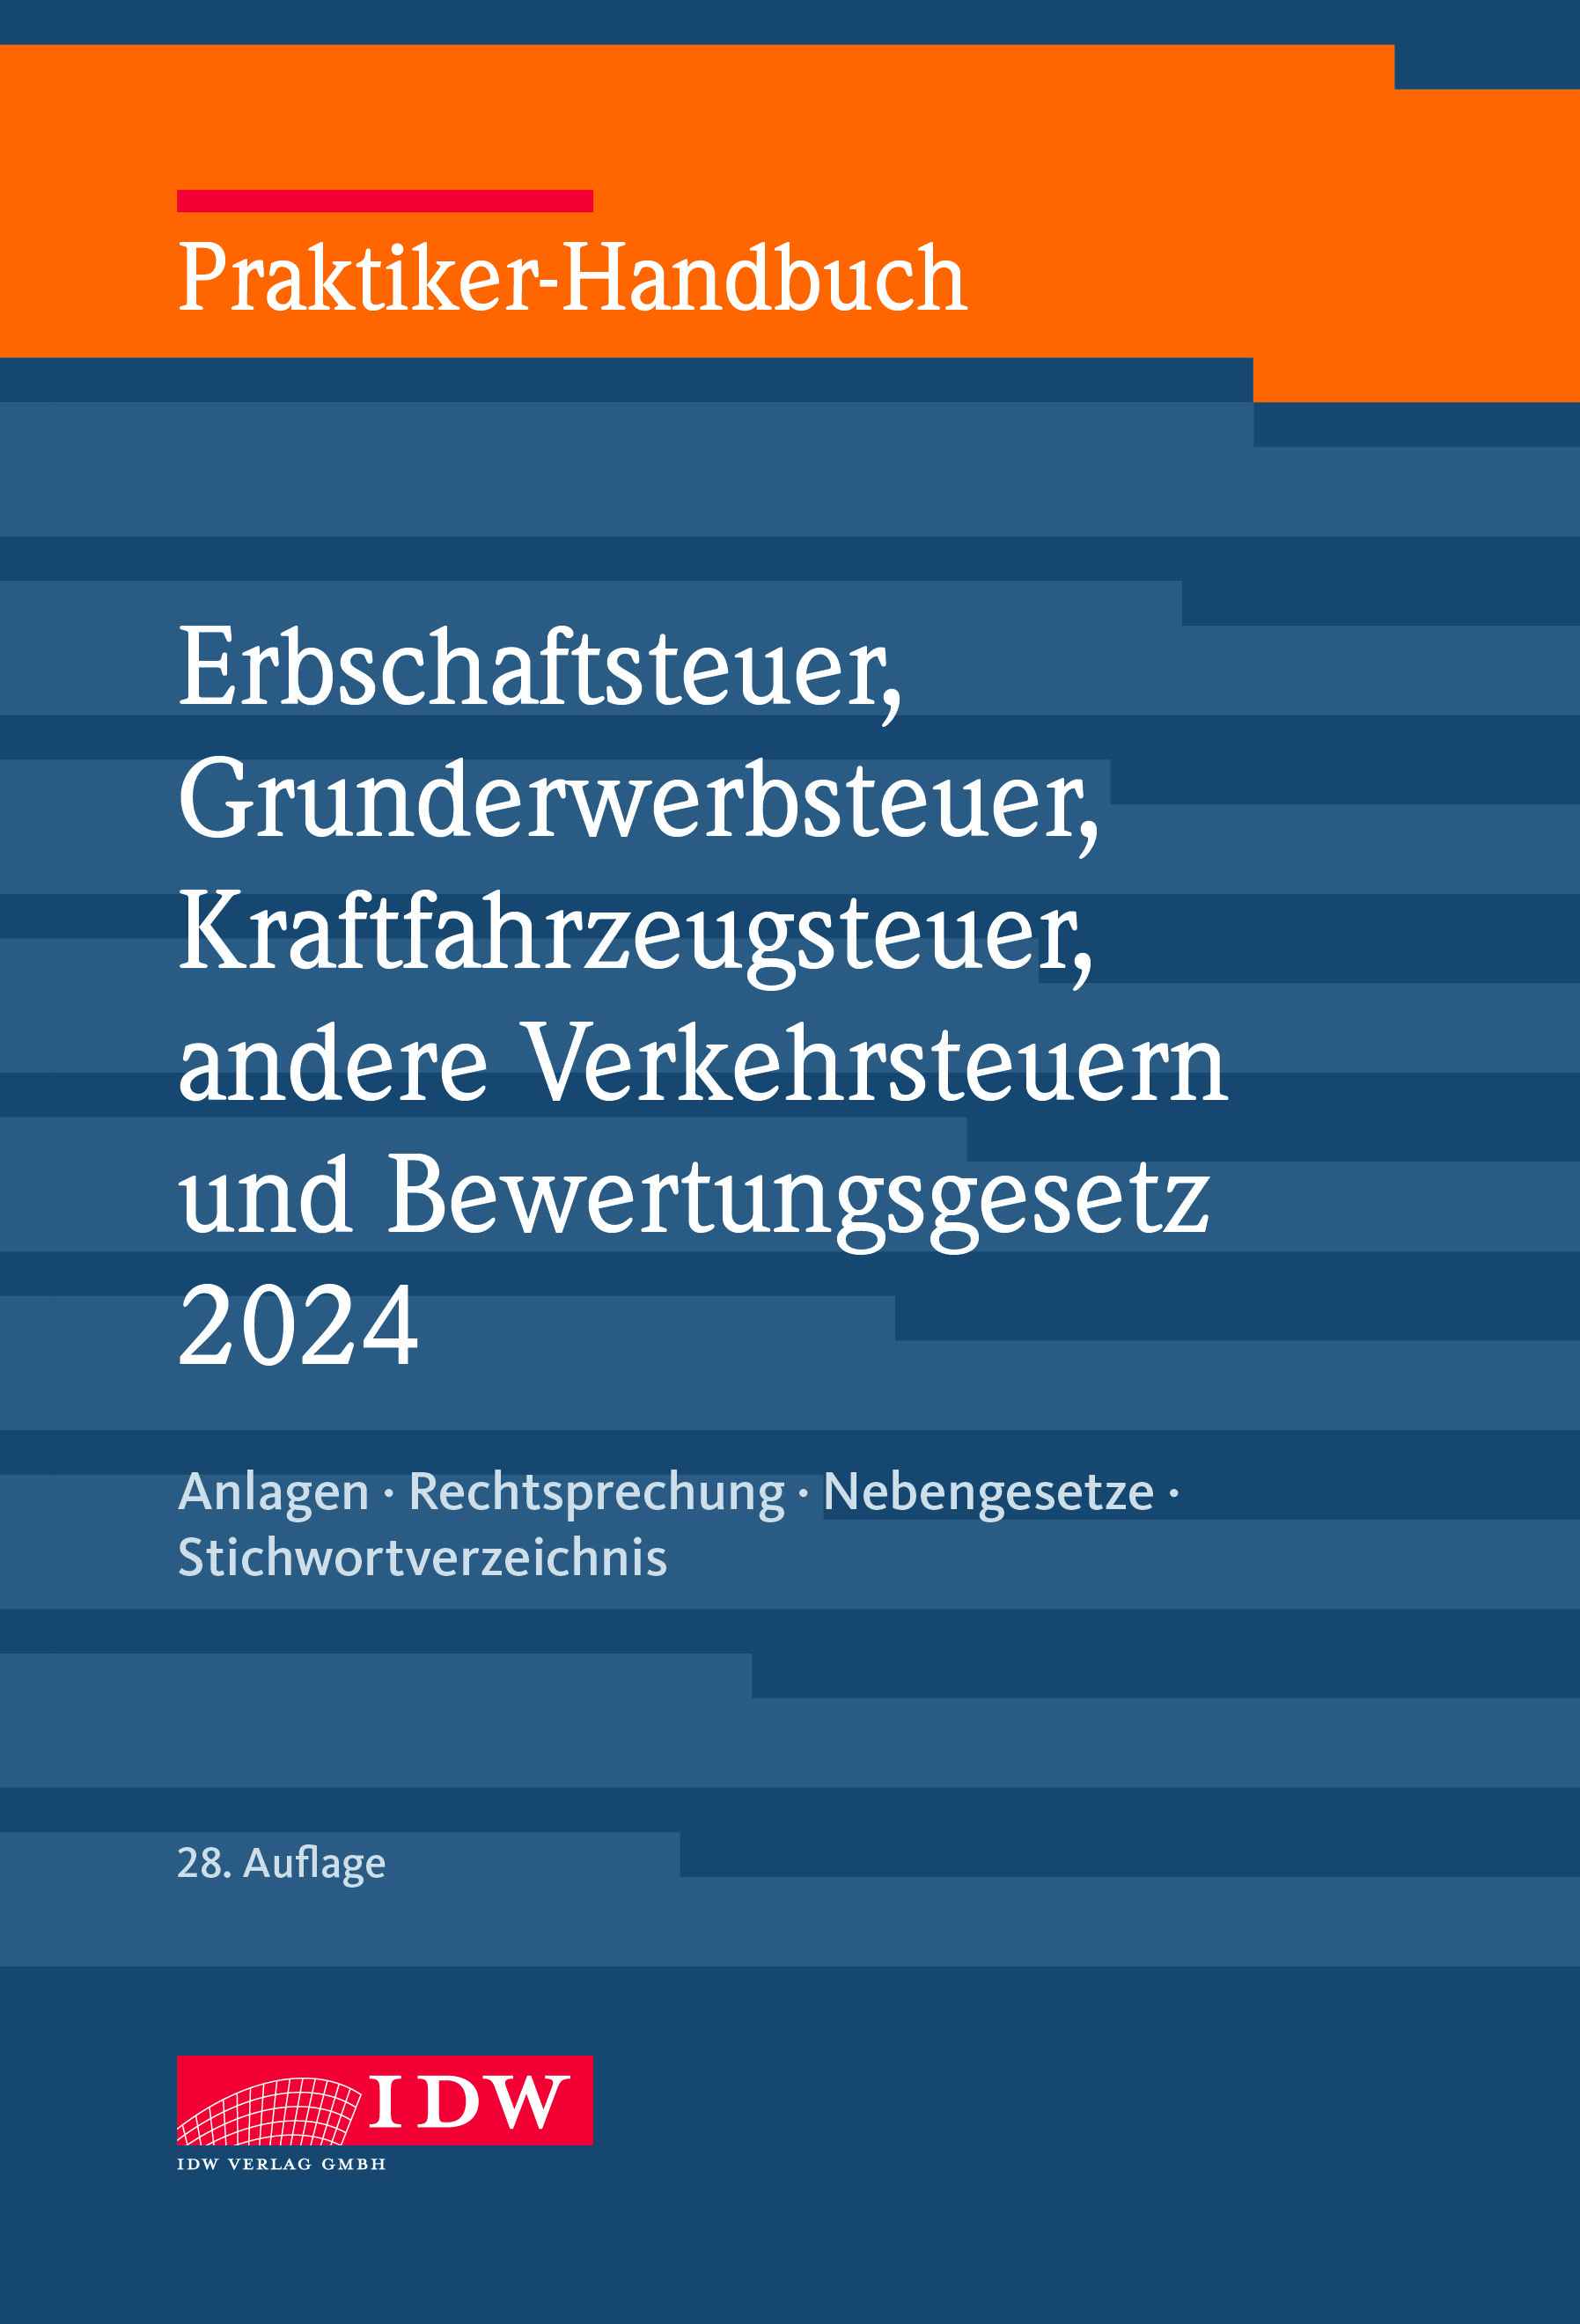 Praktiker-Handbuch Erbschaftsteuer, Grunderwerbsteuer, Kraftfahrzeugsteuer, andere Verkehrsteuern und Bewertungsgesetz 2024